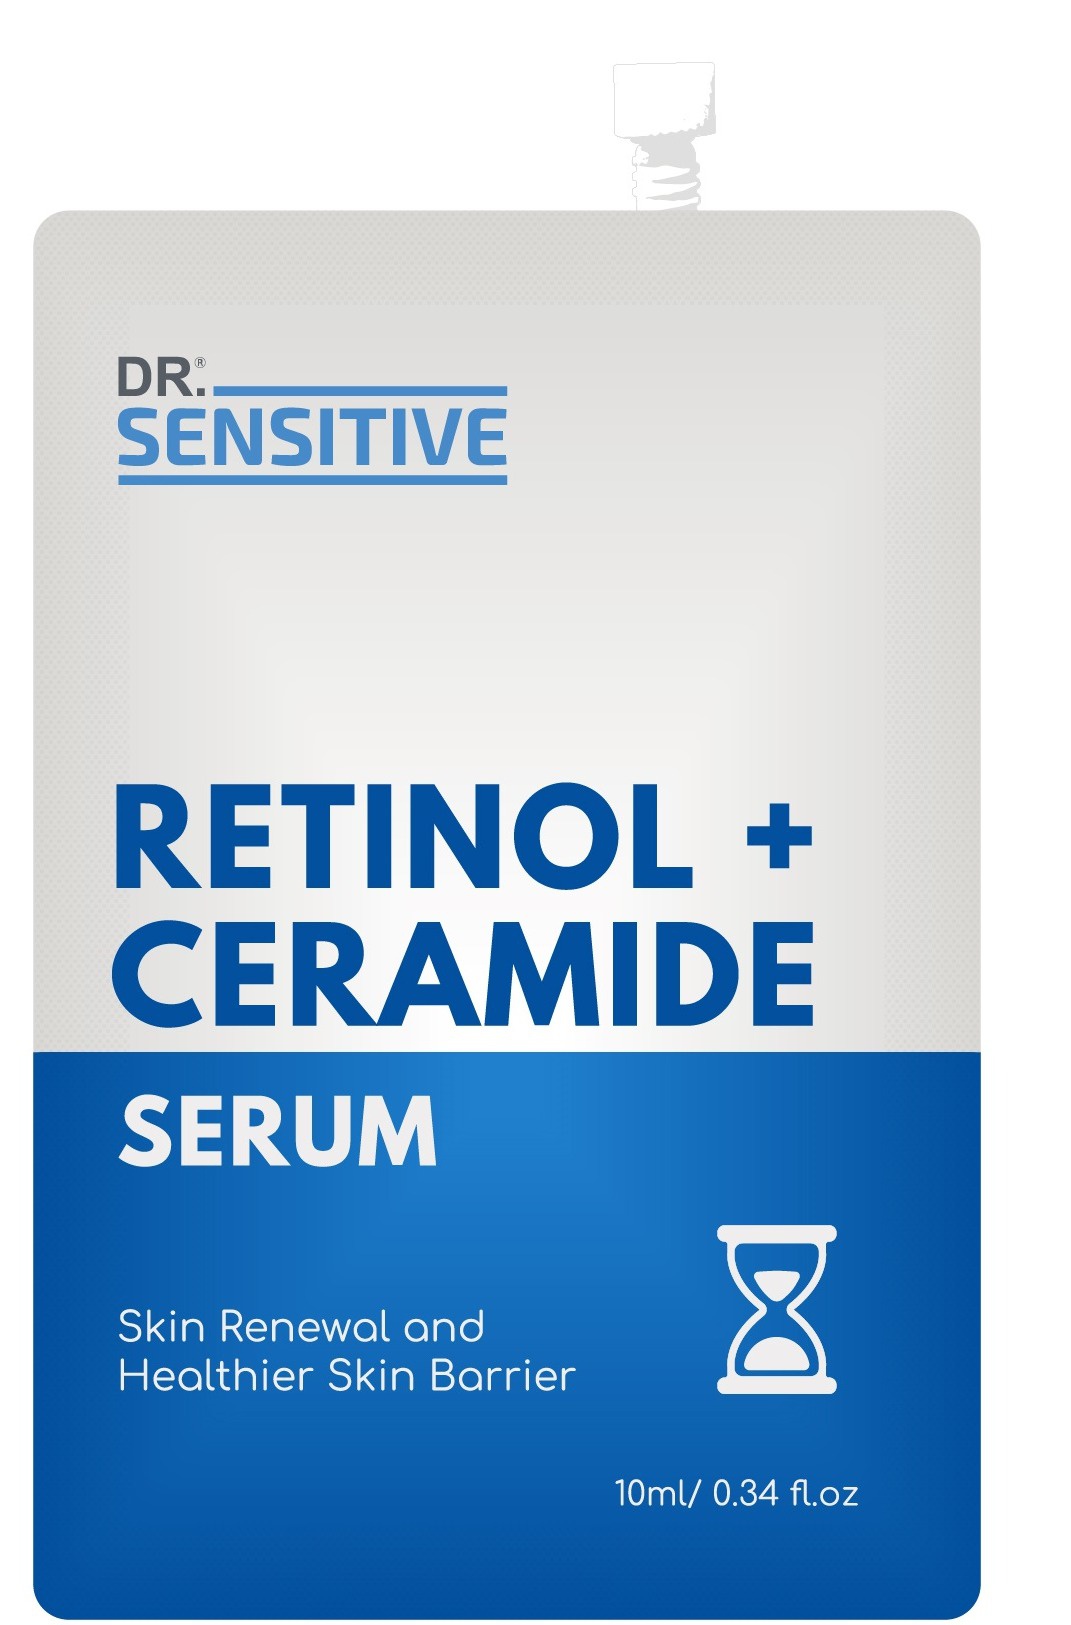 Dr. Sensitive Retinol + Ceramide Serum